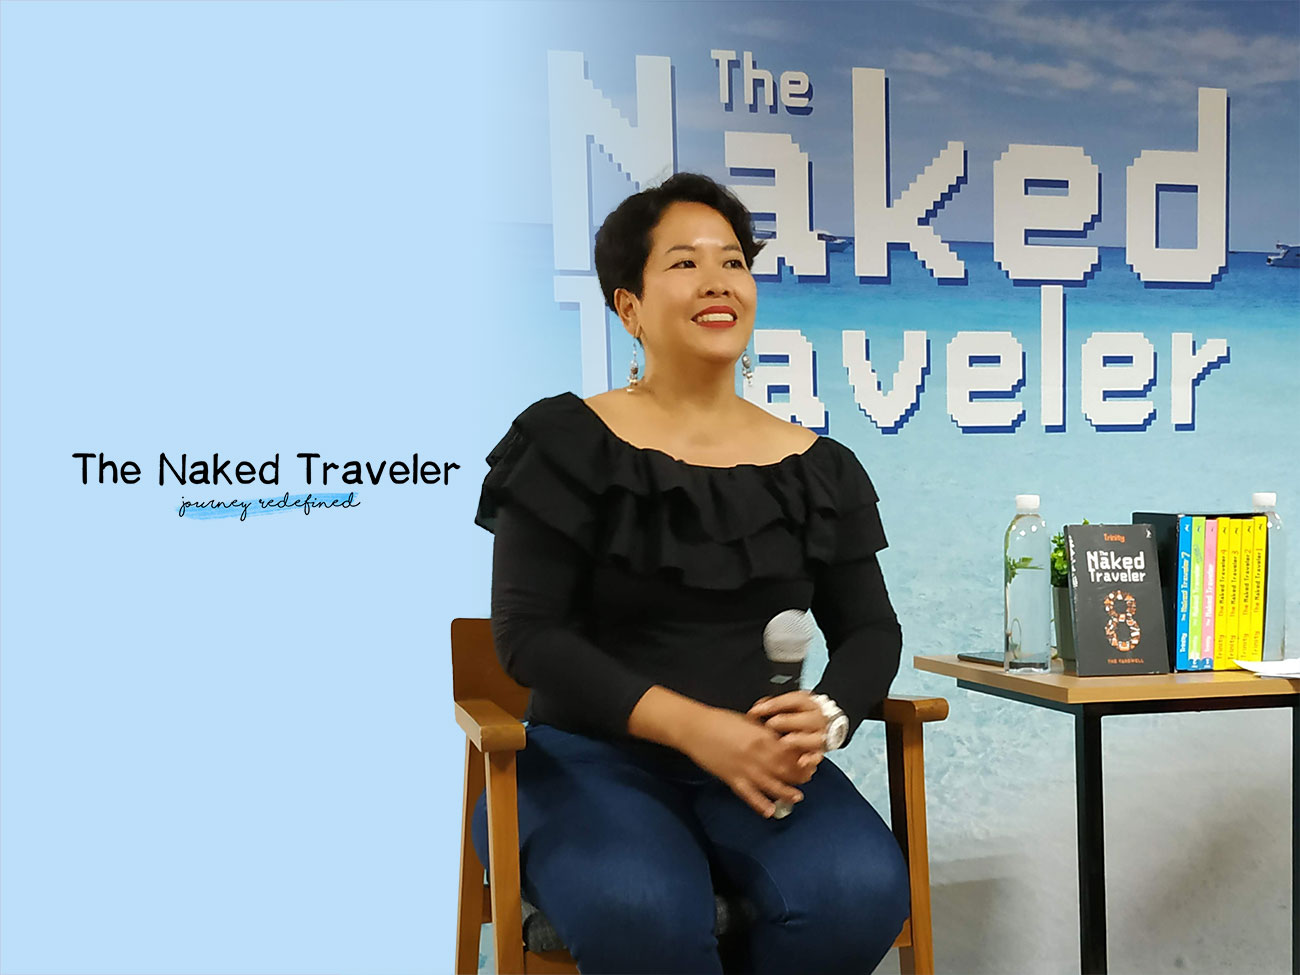 The Naked Traveler - Journey Redefined